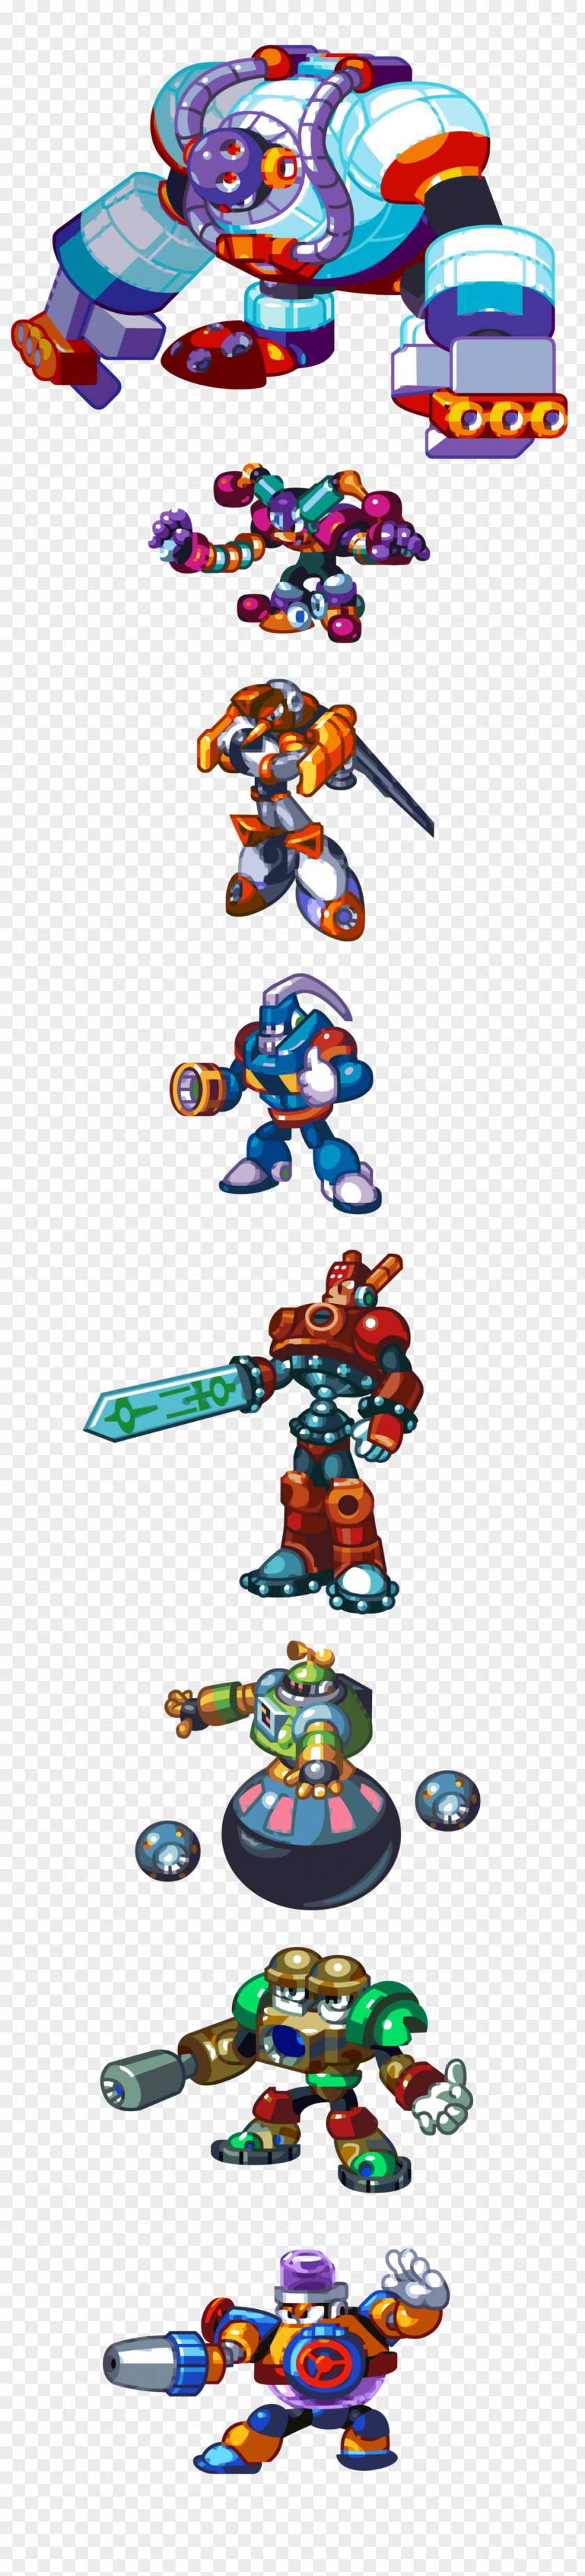 Megaman Mega Man 8 9 5 4 PNG